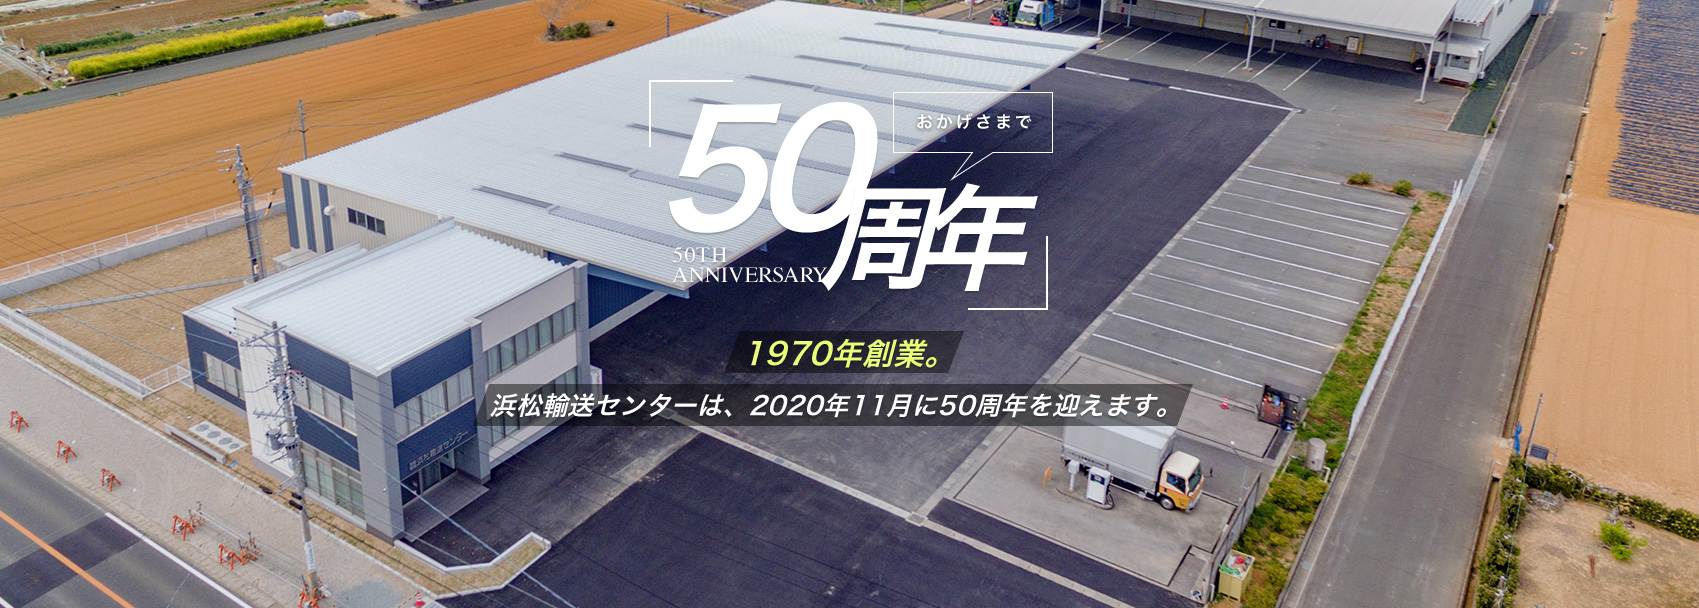 1970年創業 浜松輸送センターは、2020年11月に50周年を迎えます。